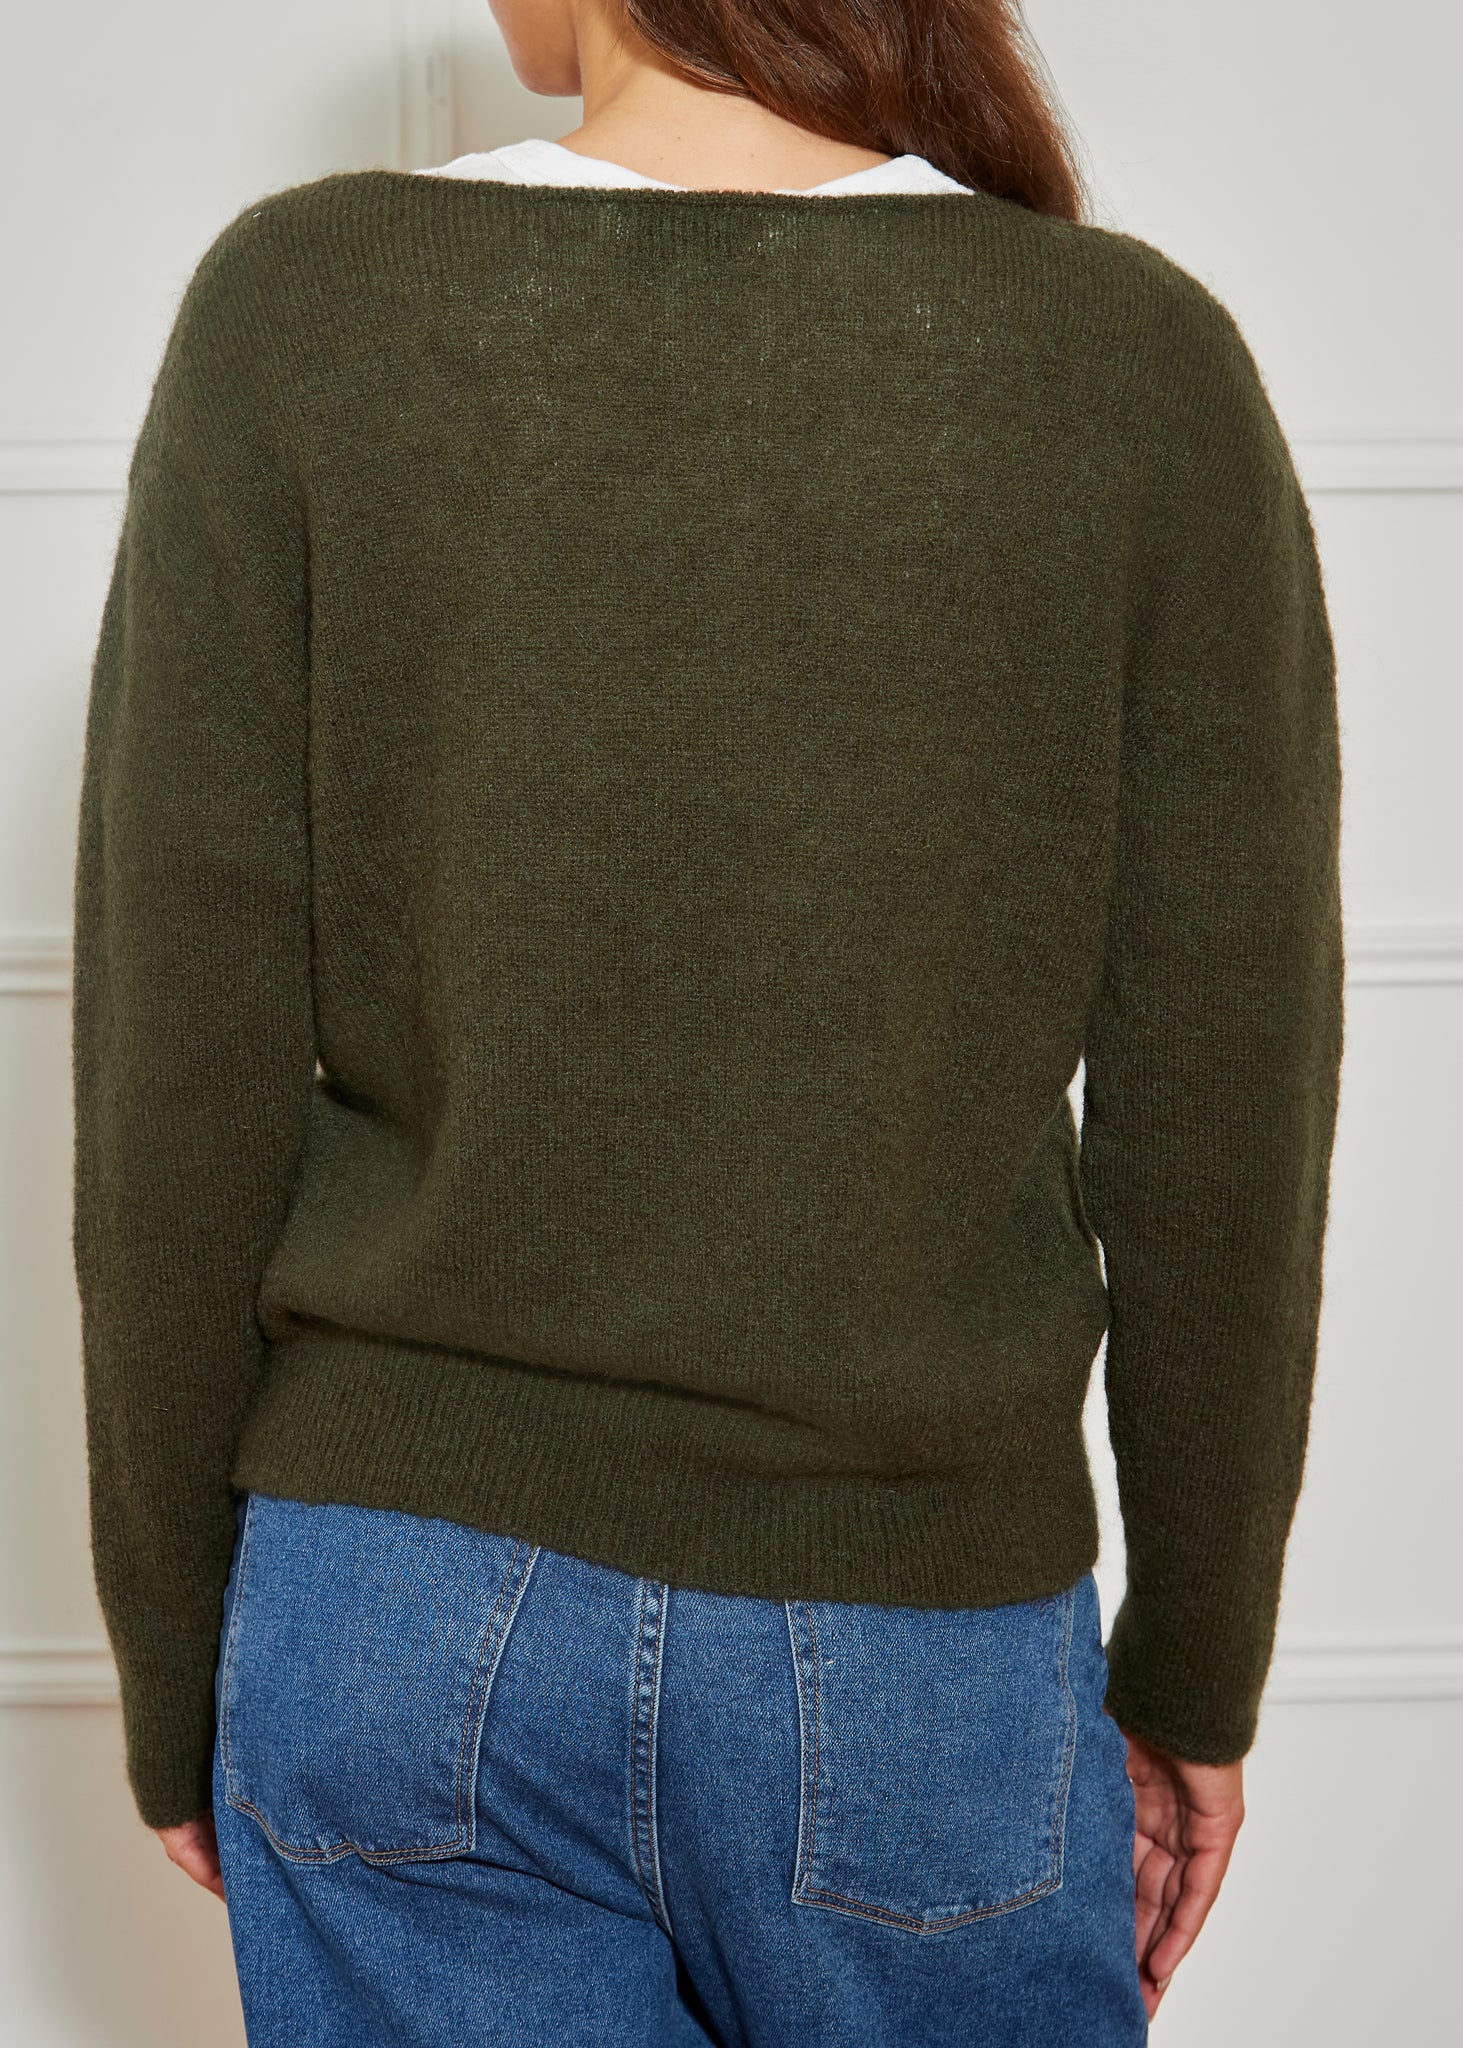 Bikey Khaki Oval Neck Sweater